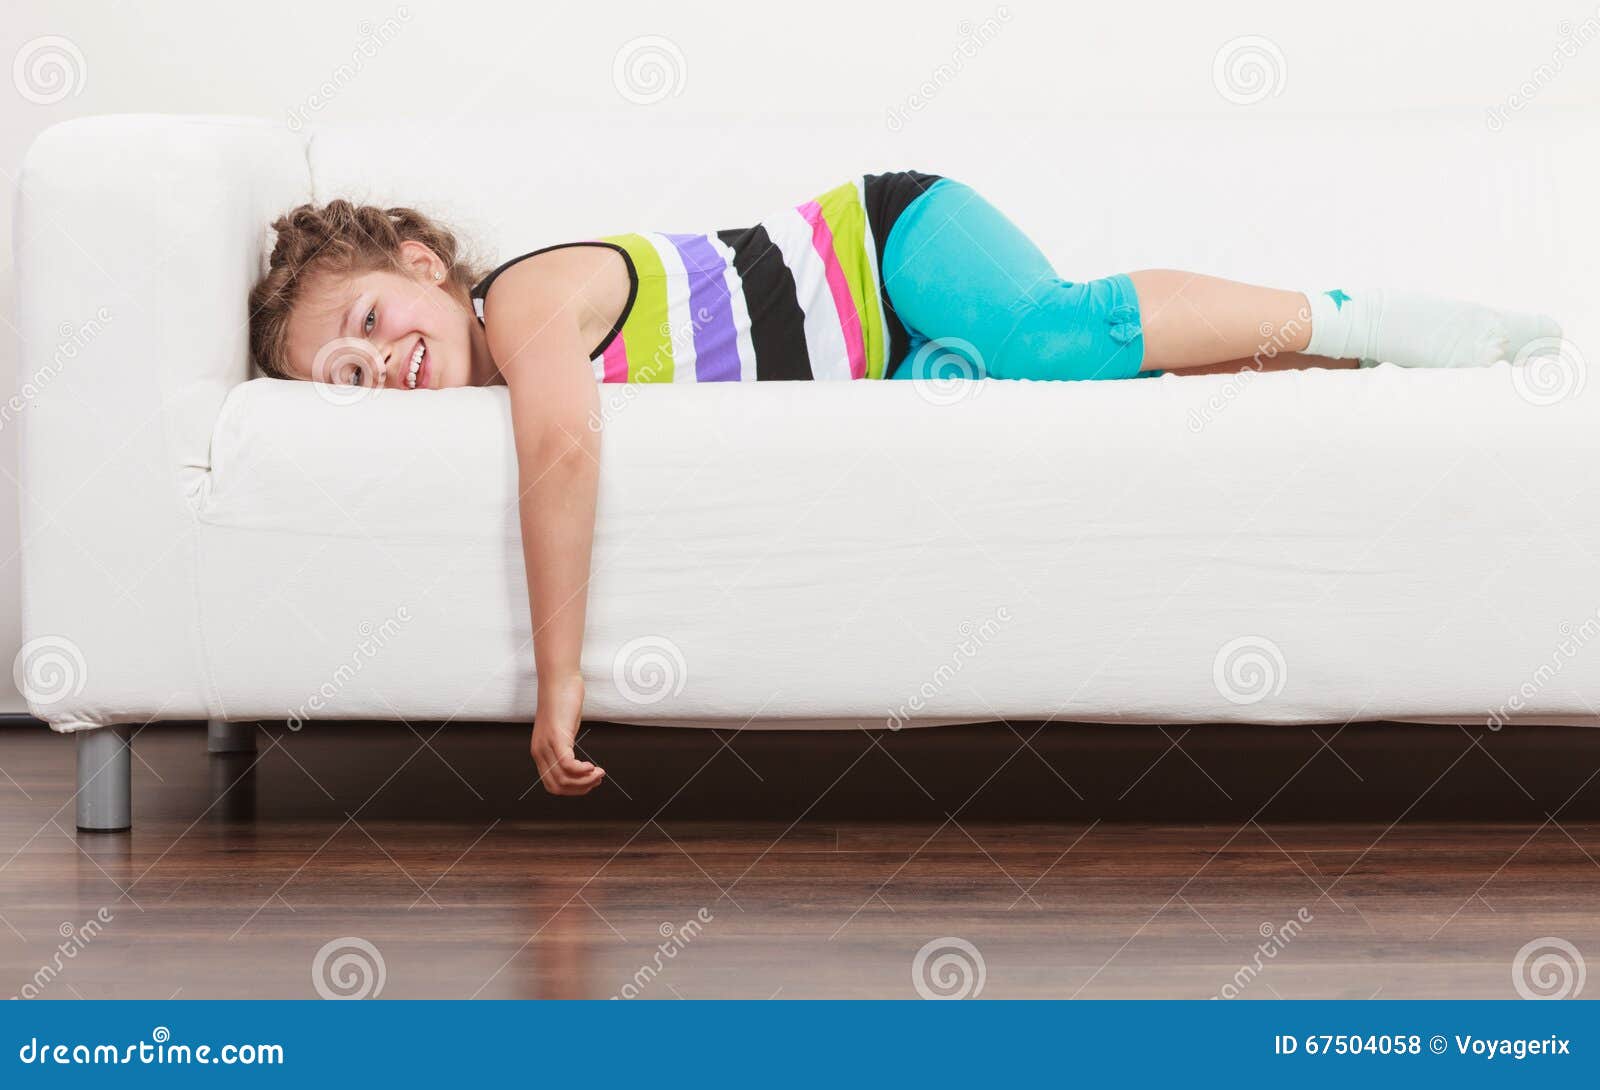 Читать лежа вредно лежа на горячем песке. Девочка лежит на диване. Ребенок лежит на диване. Девочка лежиттна диване. Диван для детей.